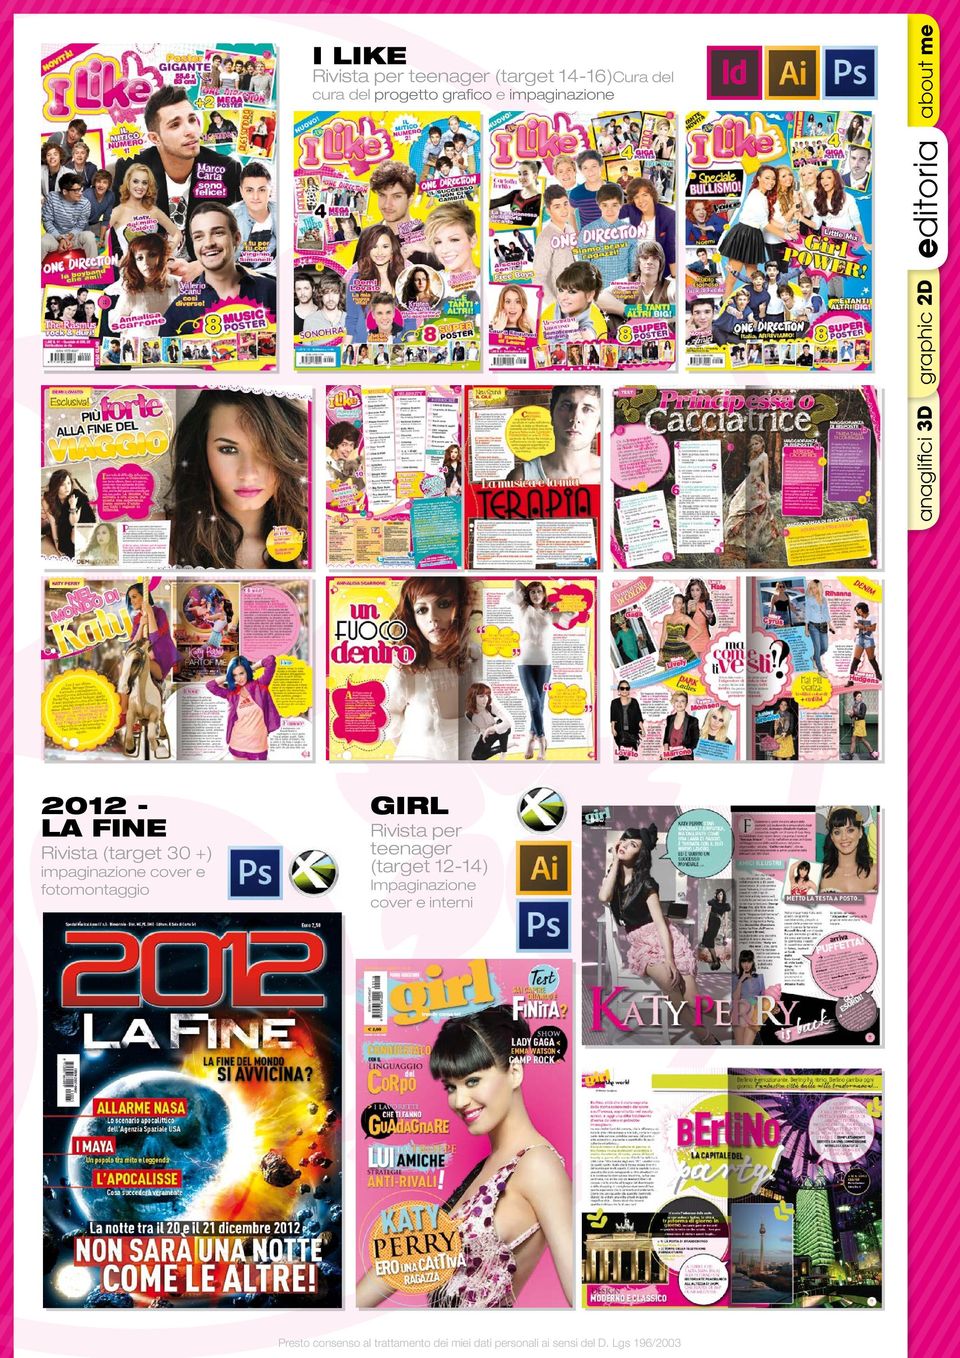 2012 LA FINE Rivista (target 30 +) impaginazione cover e